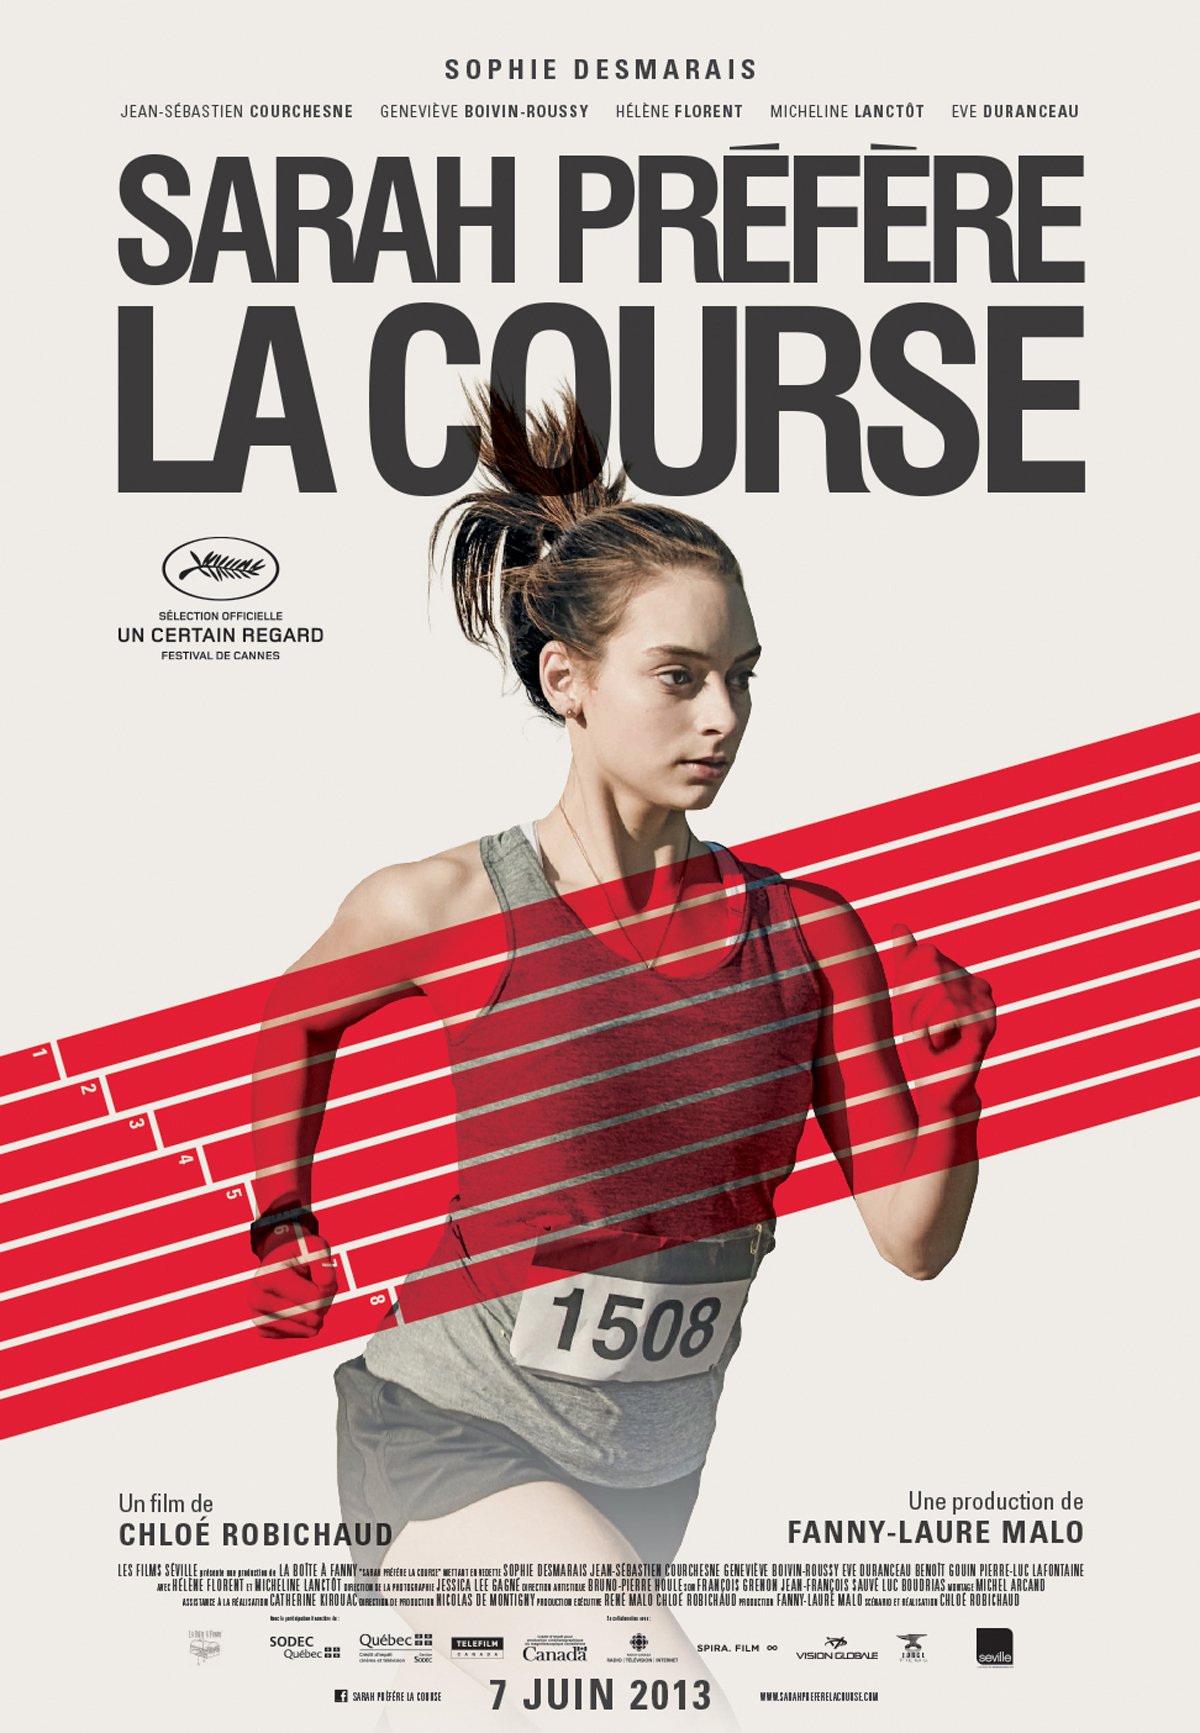 Poster of the movie Sarah Prefers to Run